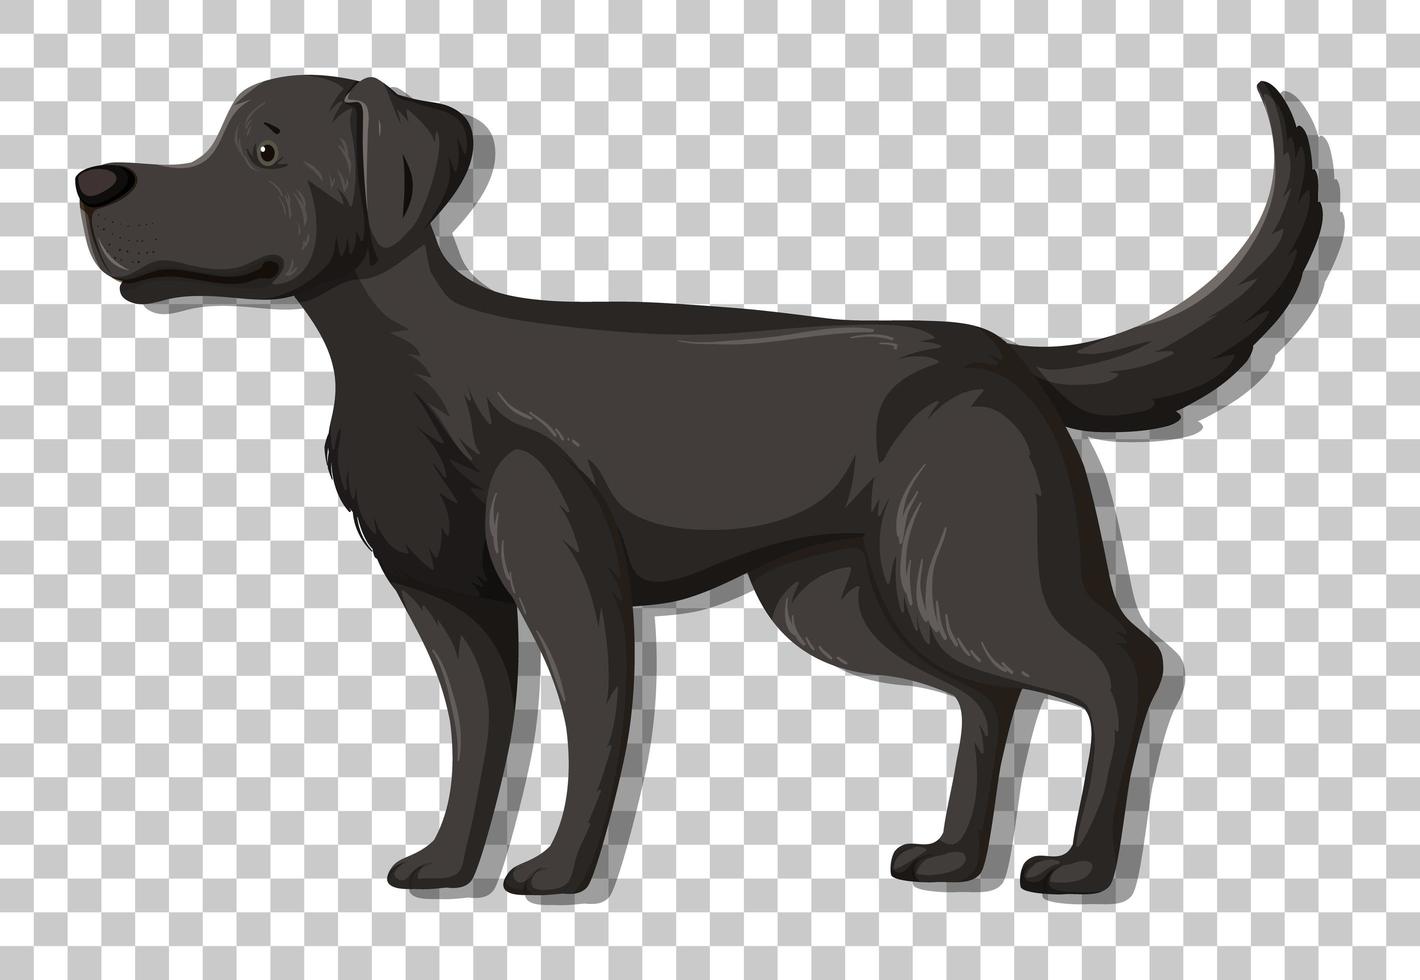 zwarte labrador retriever in staande positie stripfiguur geïsoleerd op transparante achtergrond vector